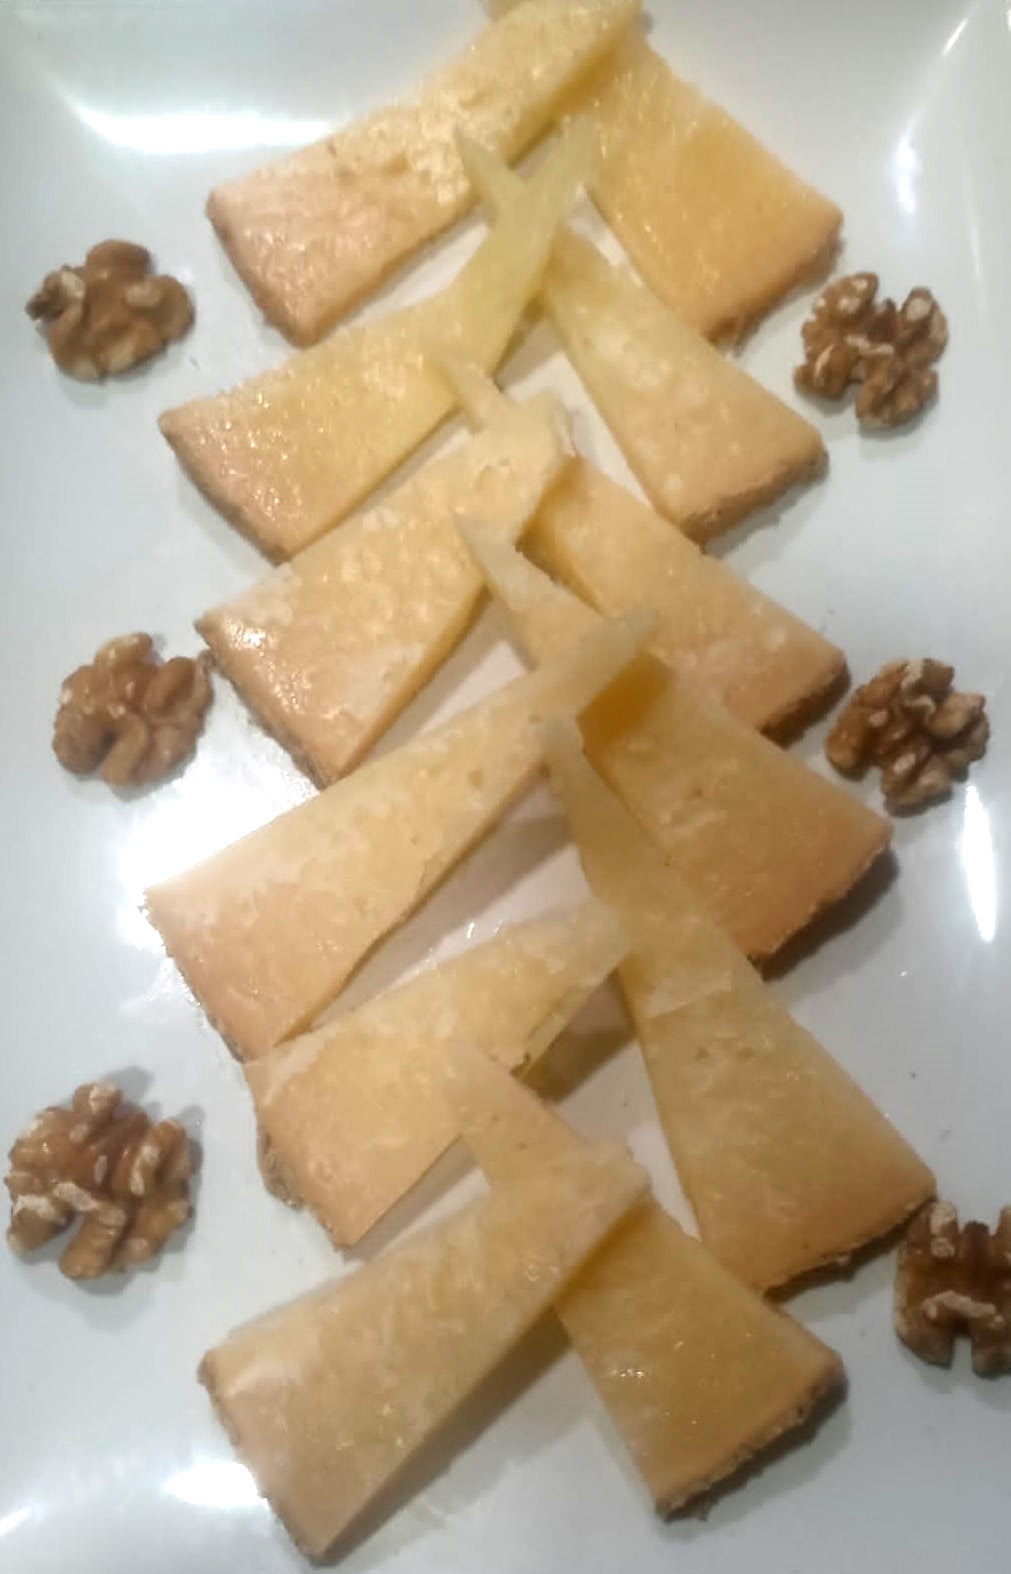 Matured sheep cheese